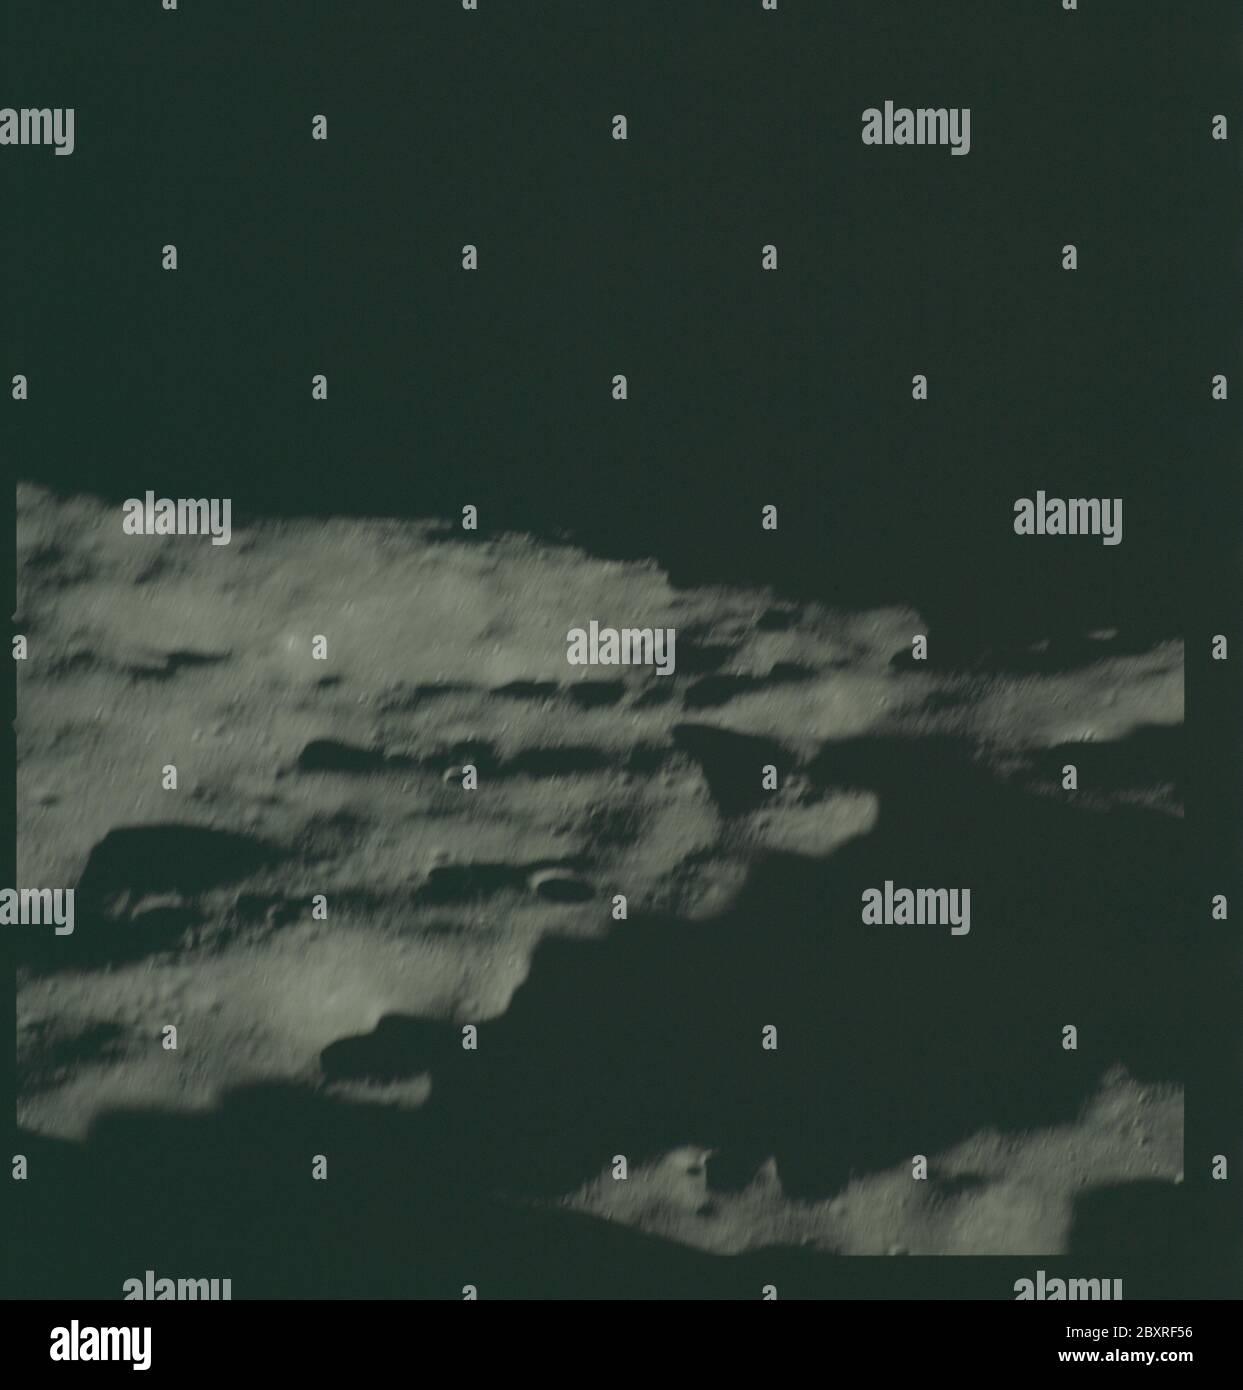 AS14-72-9947 - Apollo 14 - immagine della missione Apollo 14 - Vista ad est da un punto ad ovest del cratere Chaplygin.; scopo e contenuto: Il database originale descrive questo come: Descrizione: Vista ad est da un punto ad ovest del cratere Chaplygin. Le immagini sono state scattate durante la Rivoluzione 14 della missione Apollo 14. Il caricatore di pellicola originale era etichettato L, il tipo di pellicola era CEX S0-368 (Ektachrome MS, inversione di colore), lente da 500 mm con un'elevazione del sole di 7 gradi. La scala approssimativa della foto è 1:1,360,000. La latitudine del punto principale era 3.0S per Longitudine 149.0E, con un'inclinazione della telecamera di 50 gradi e un azimuth di 0 Foto Stock